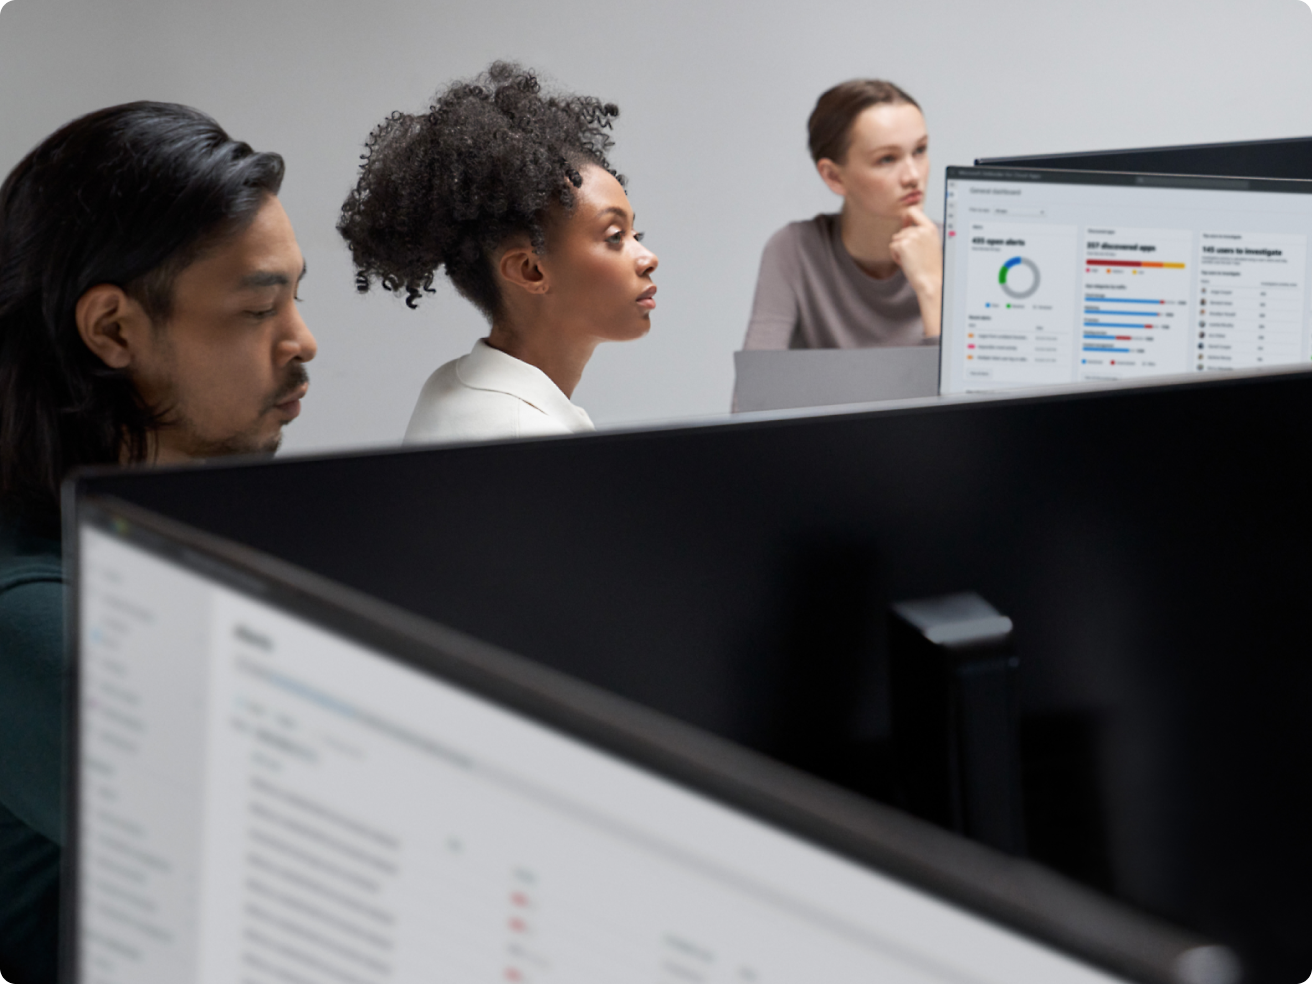 Tres trabajadores de oficina centrados en pantallas de ordenadores que muestran gráficos y datos en un entorno moderno de oficina.